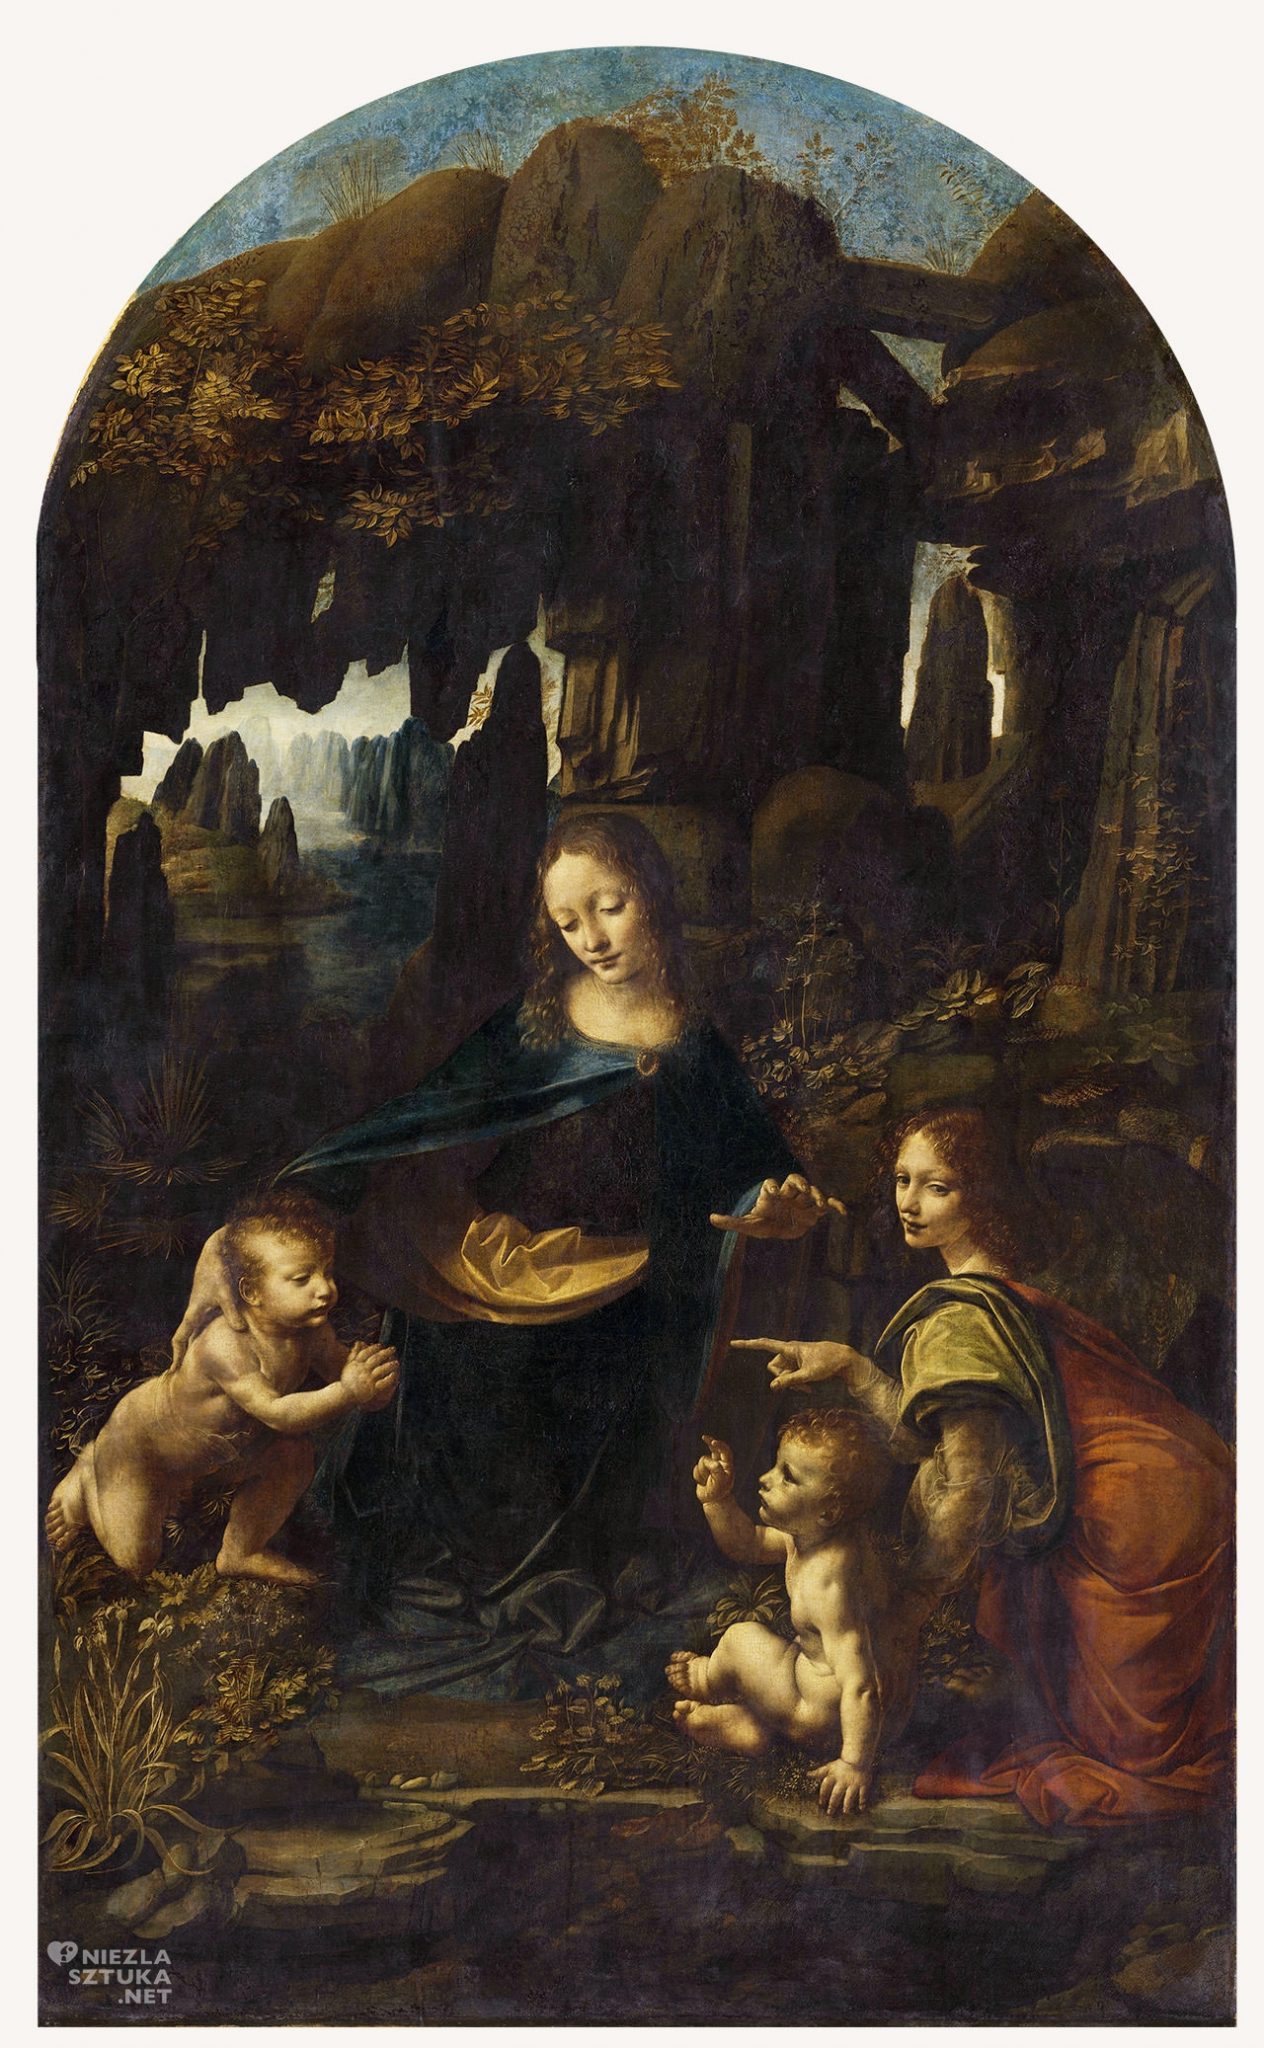 Leonardo da Vinci, Luwr, Madonna wśród skał, Madonna w grocie, sztuka włoska, malarstwo włoskie, Niezła sztuka